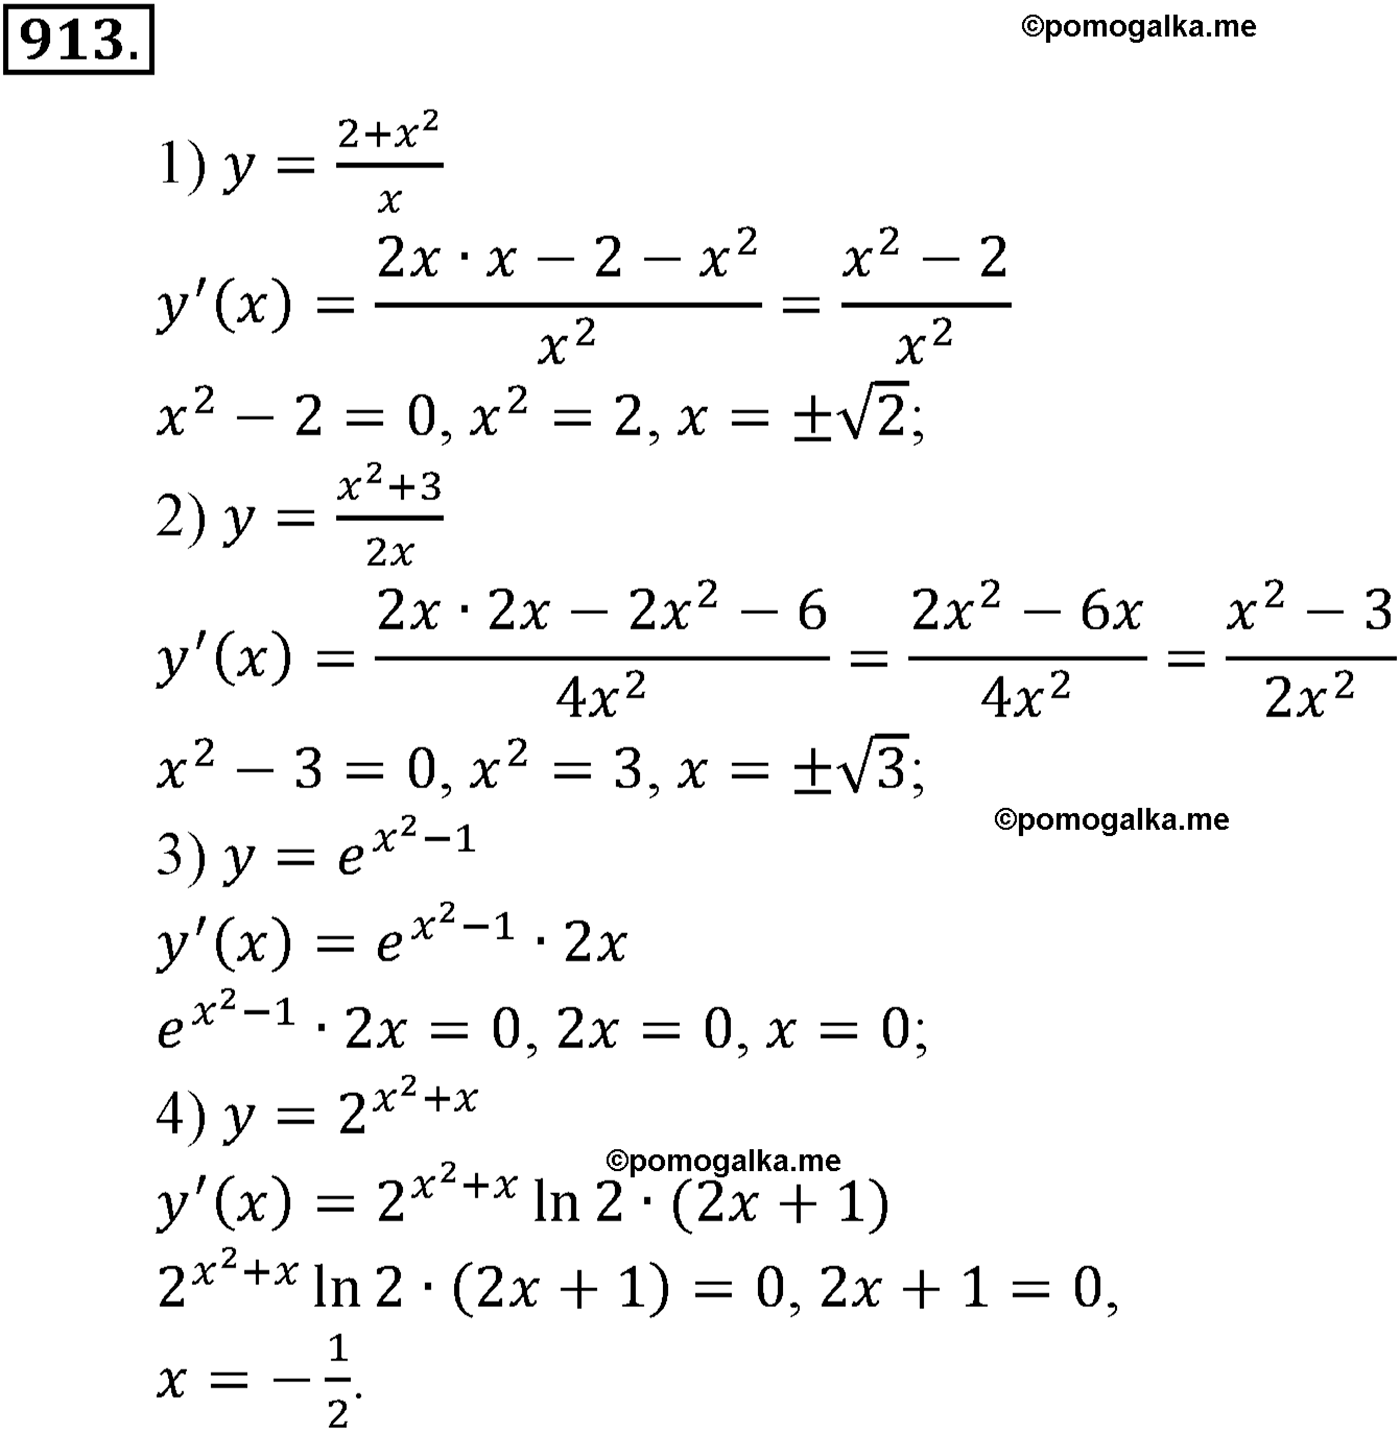 разбор задачи №913 по алгебре за 10-11 класс из учебника Алимова, Колягина